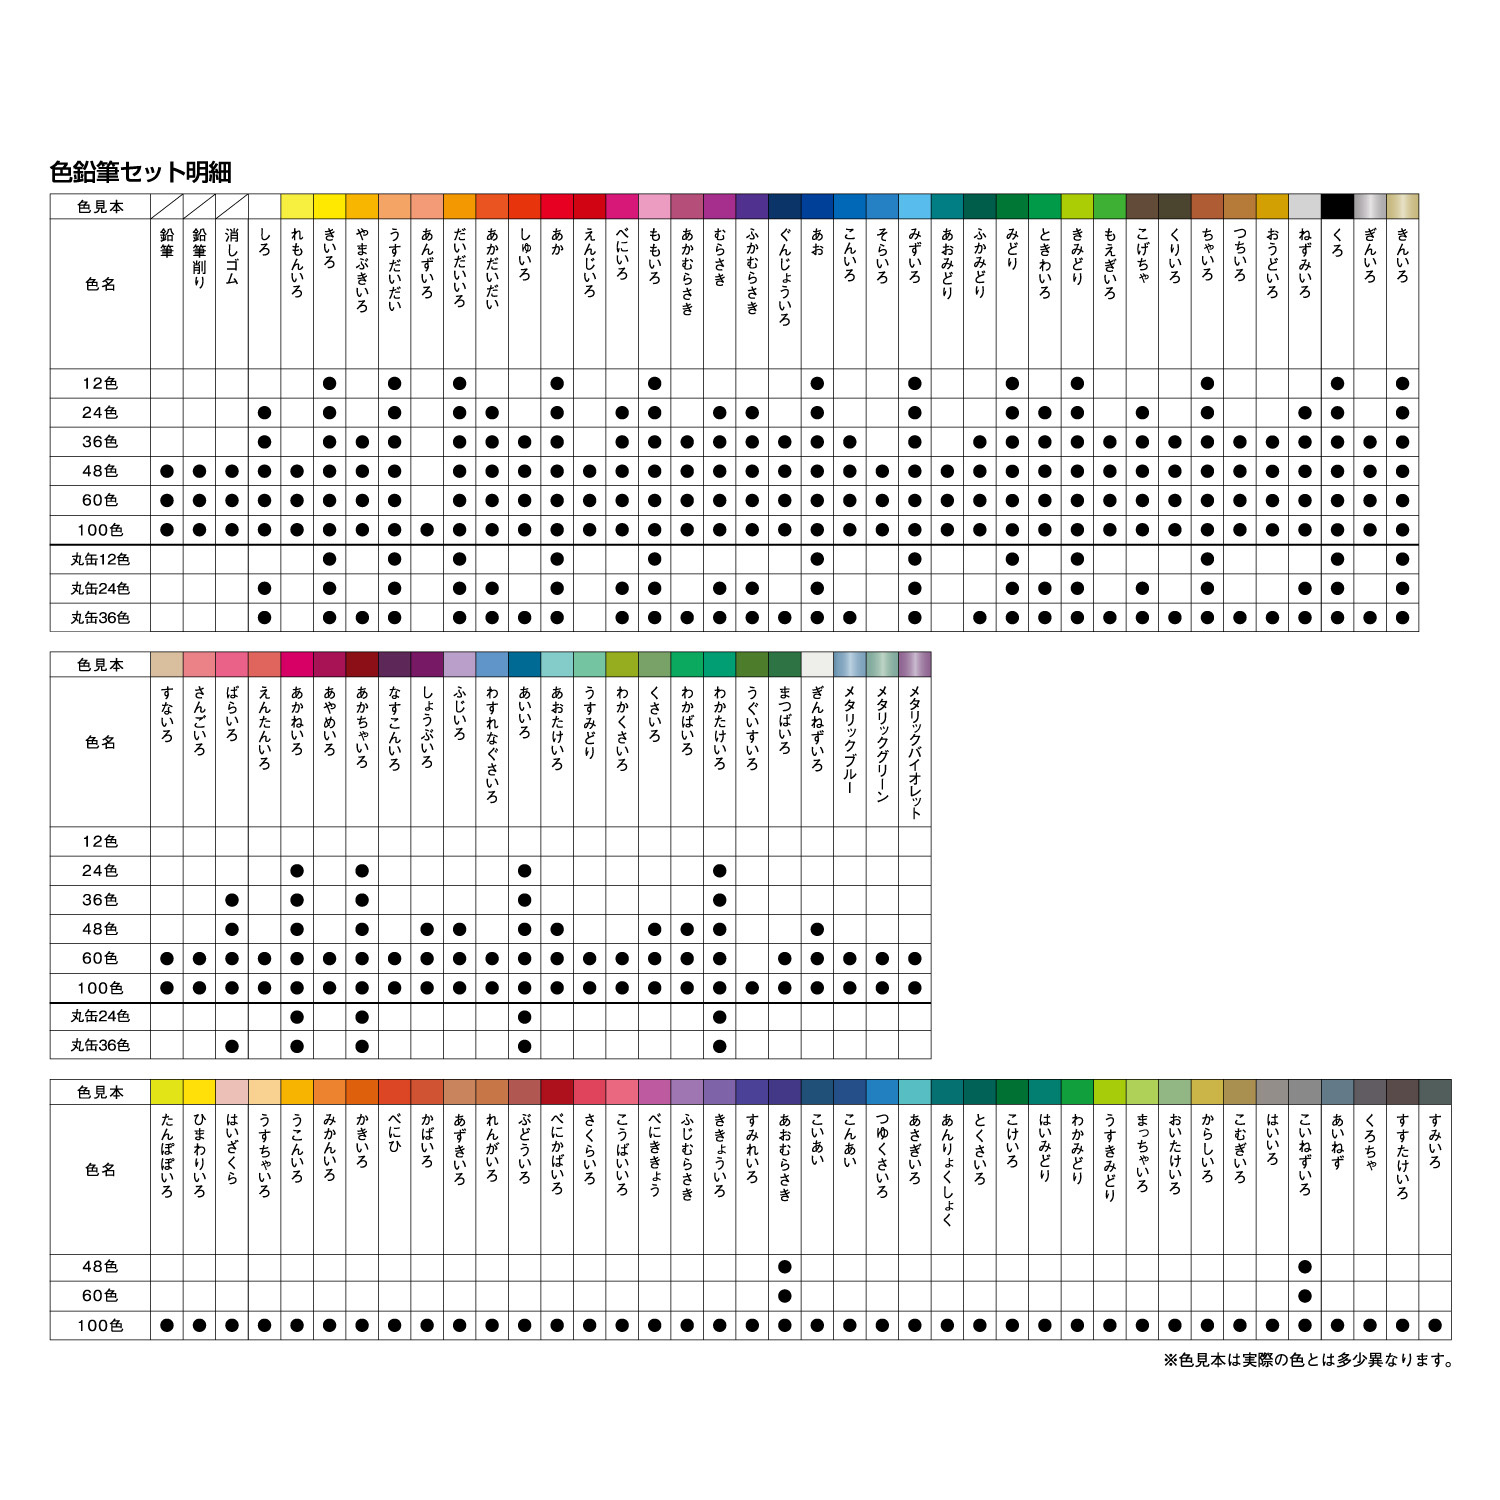 ファーバーカステル 色鉛筆 36色セット|TFC-CP/36C|商品カタログ|シヤチハタ株式会社